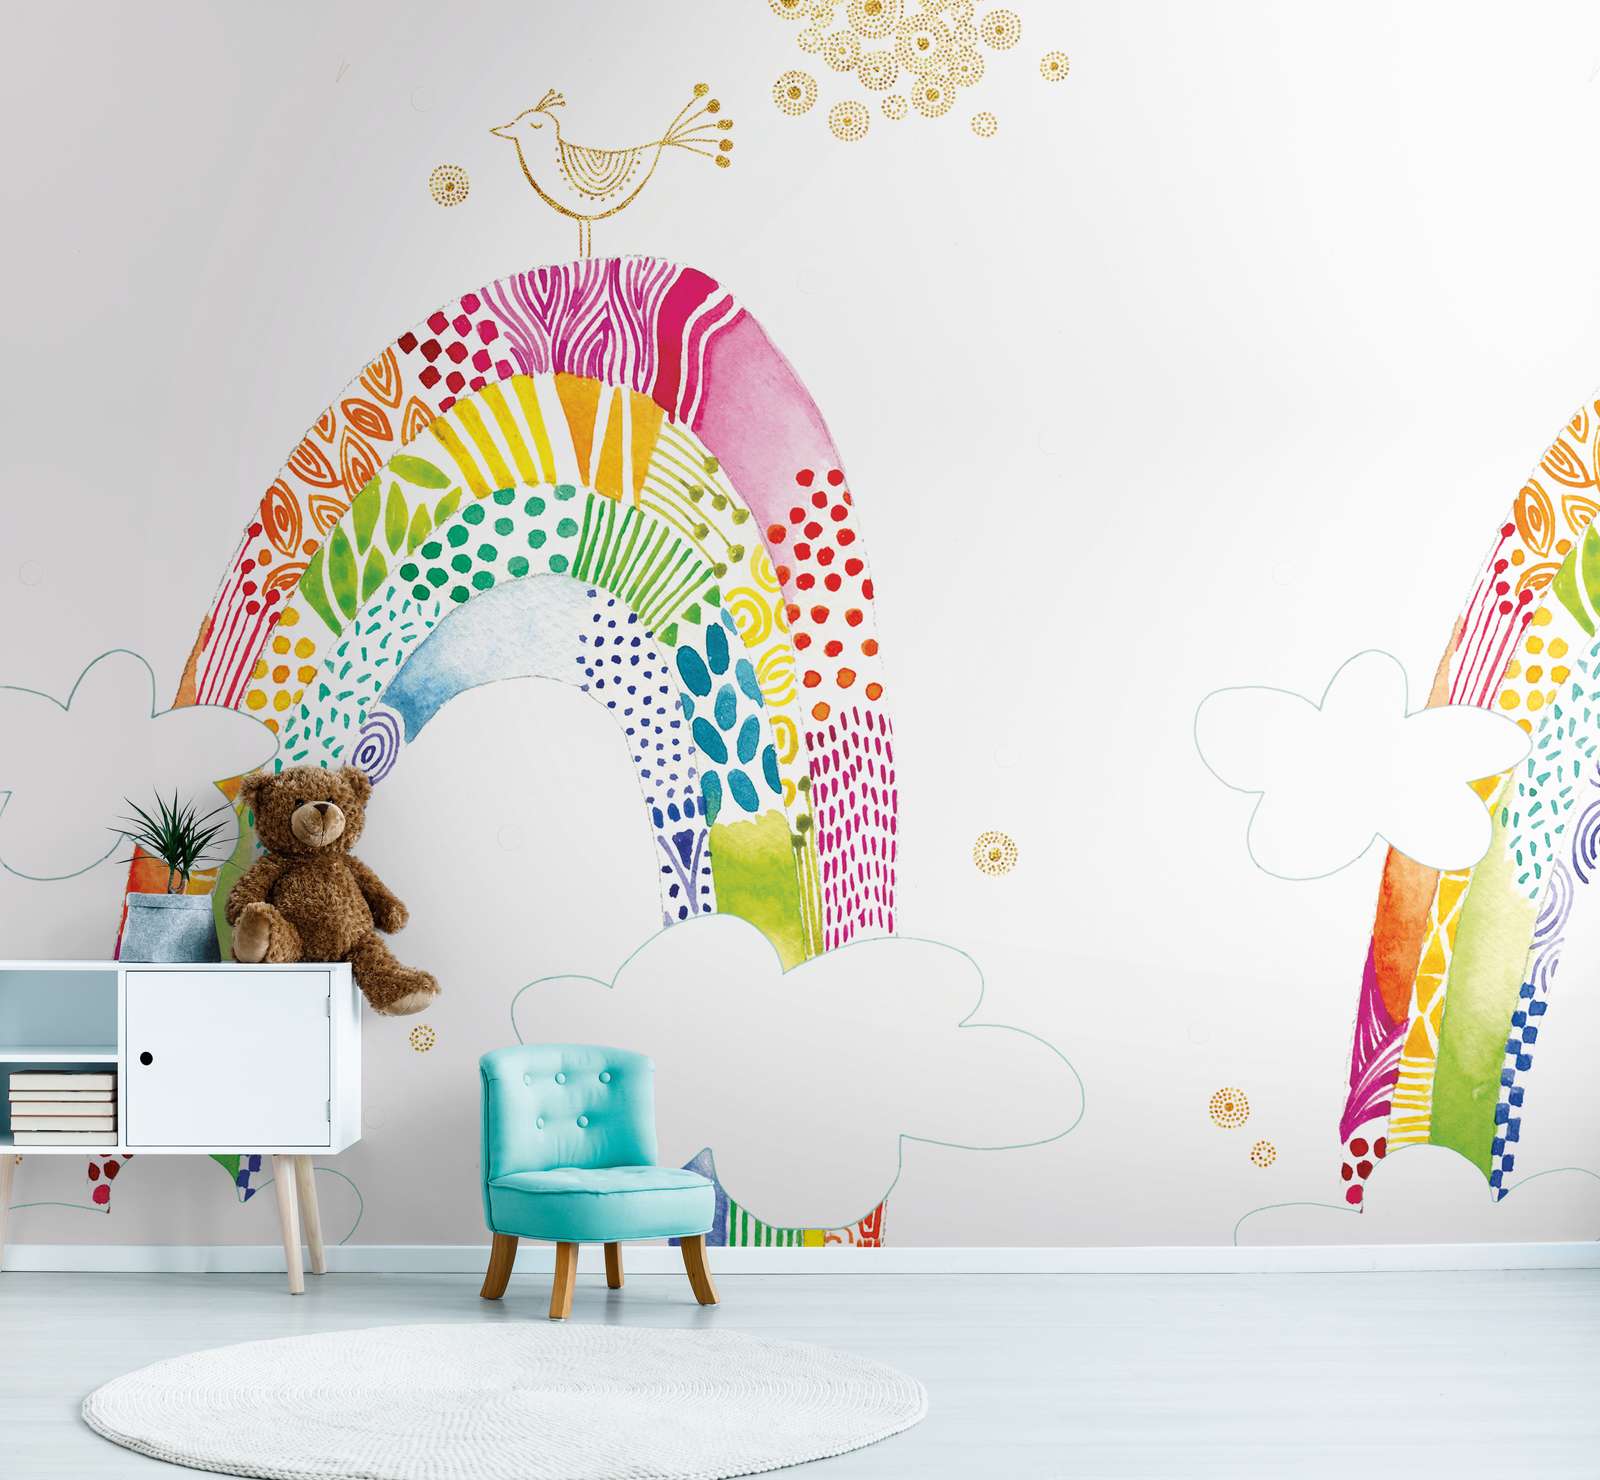             Papier peint enfant avec arc-en-ciel coloré et oiseau - multicolore, blanc, rose
        